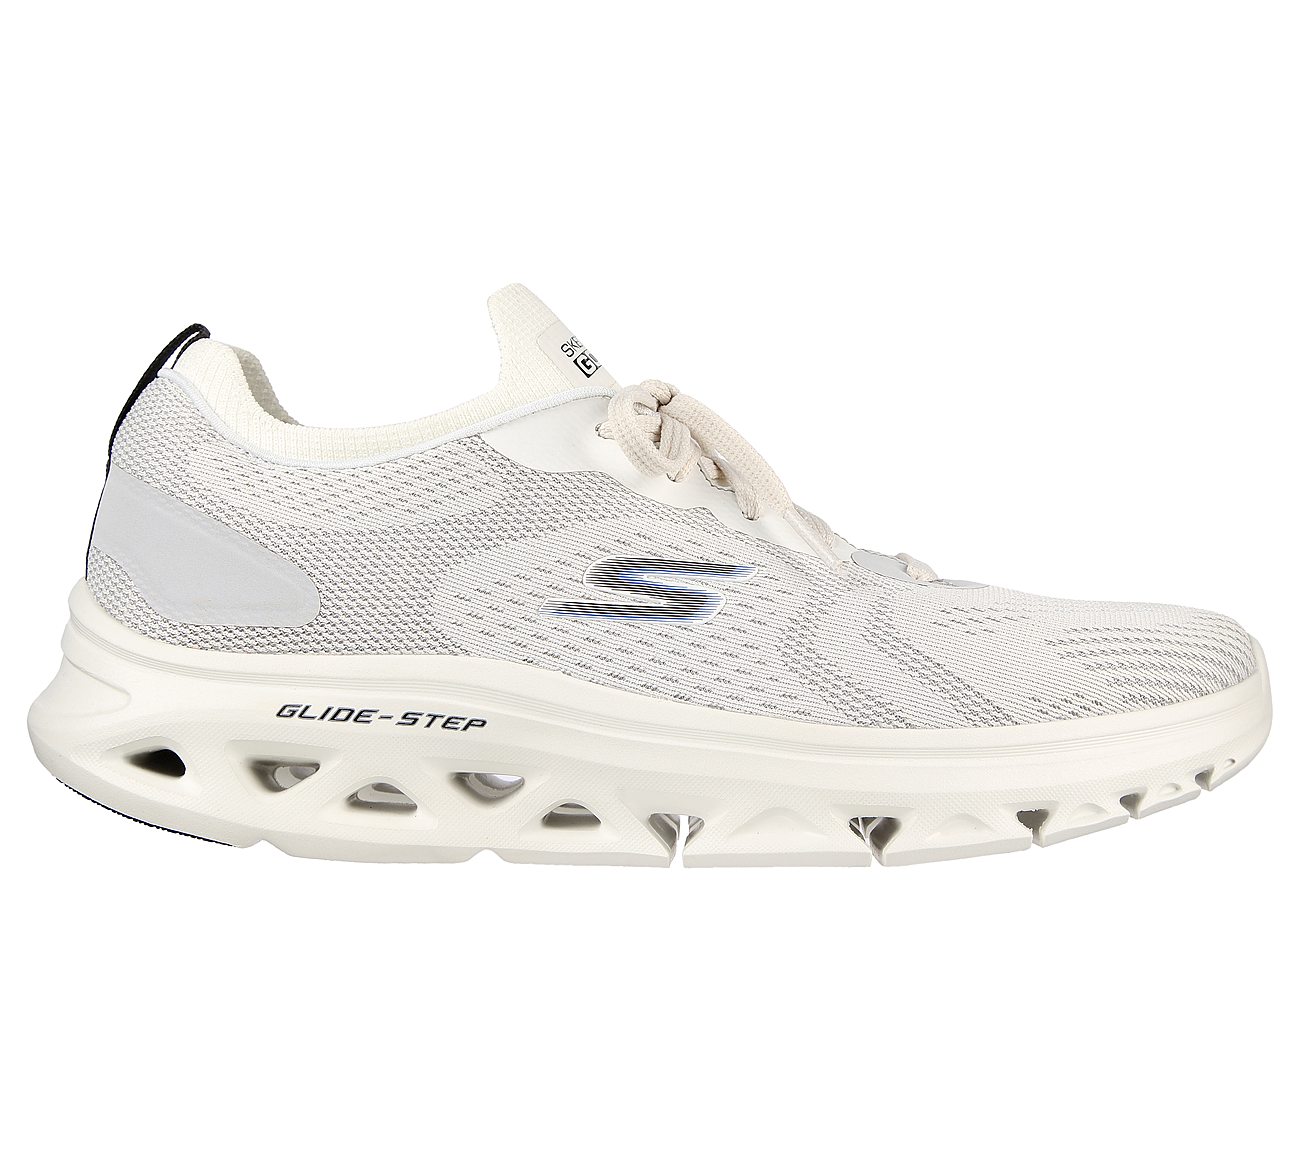 Skechers White/Black Go Run Glide Step Flex Radar Running Shoes For Men ...